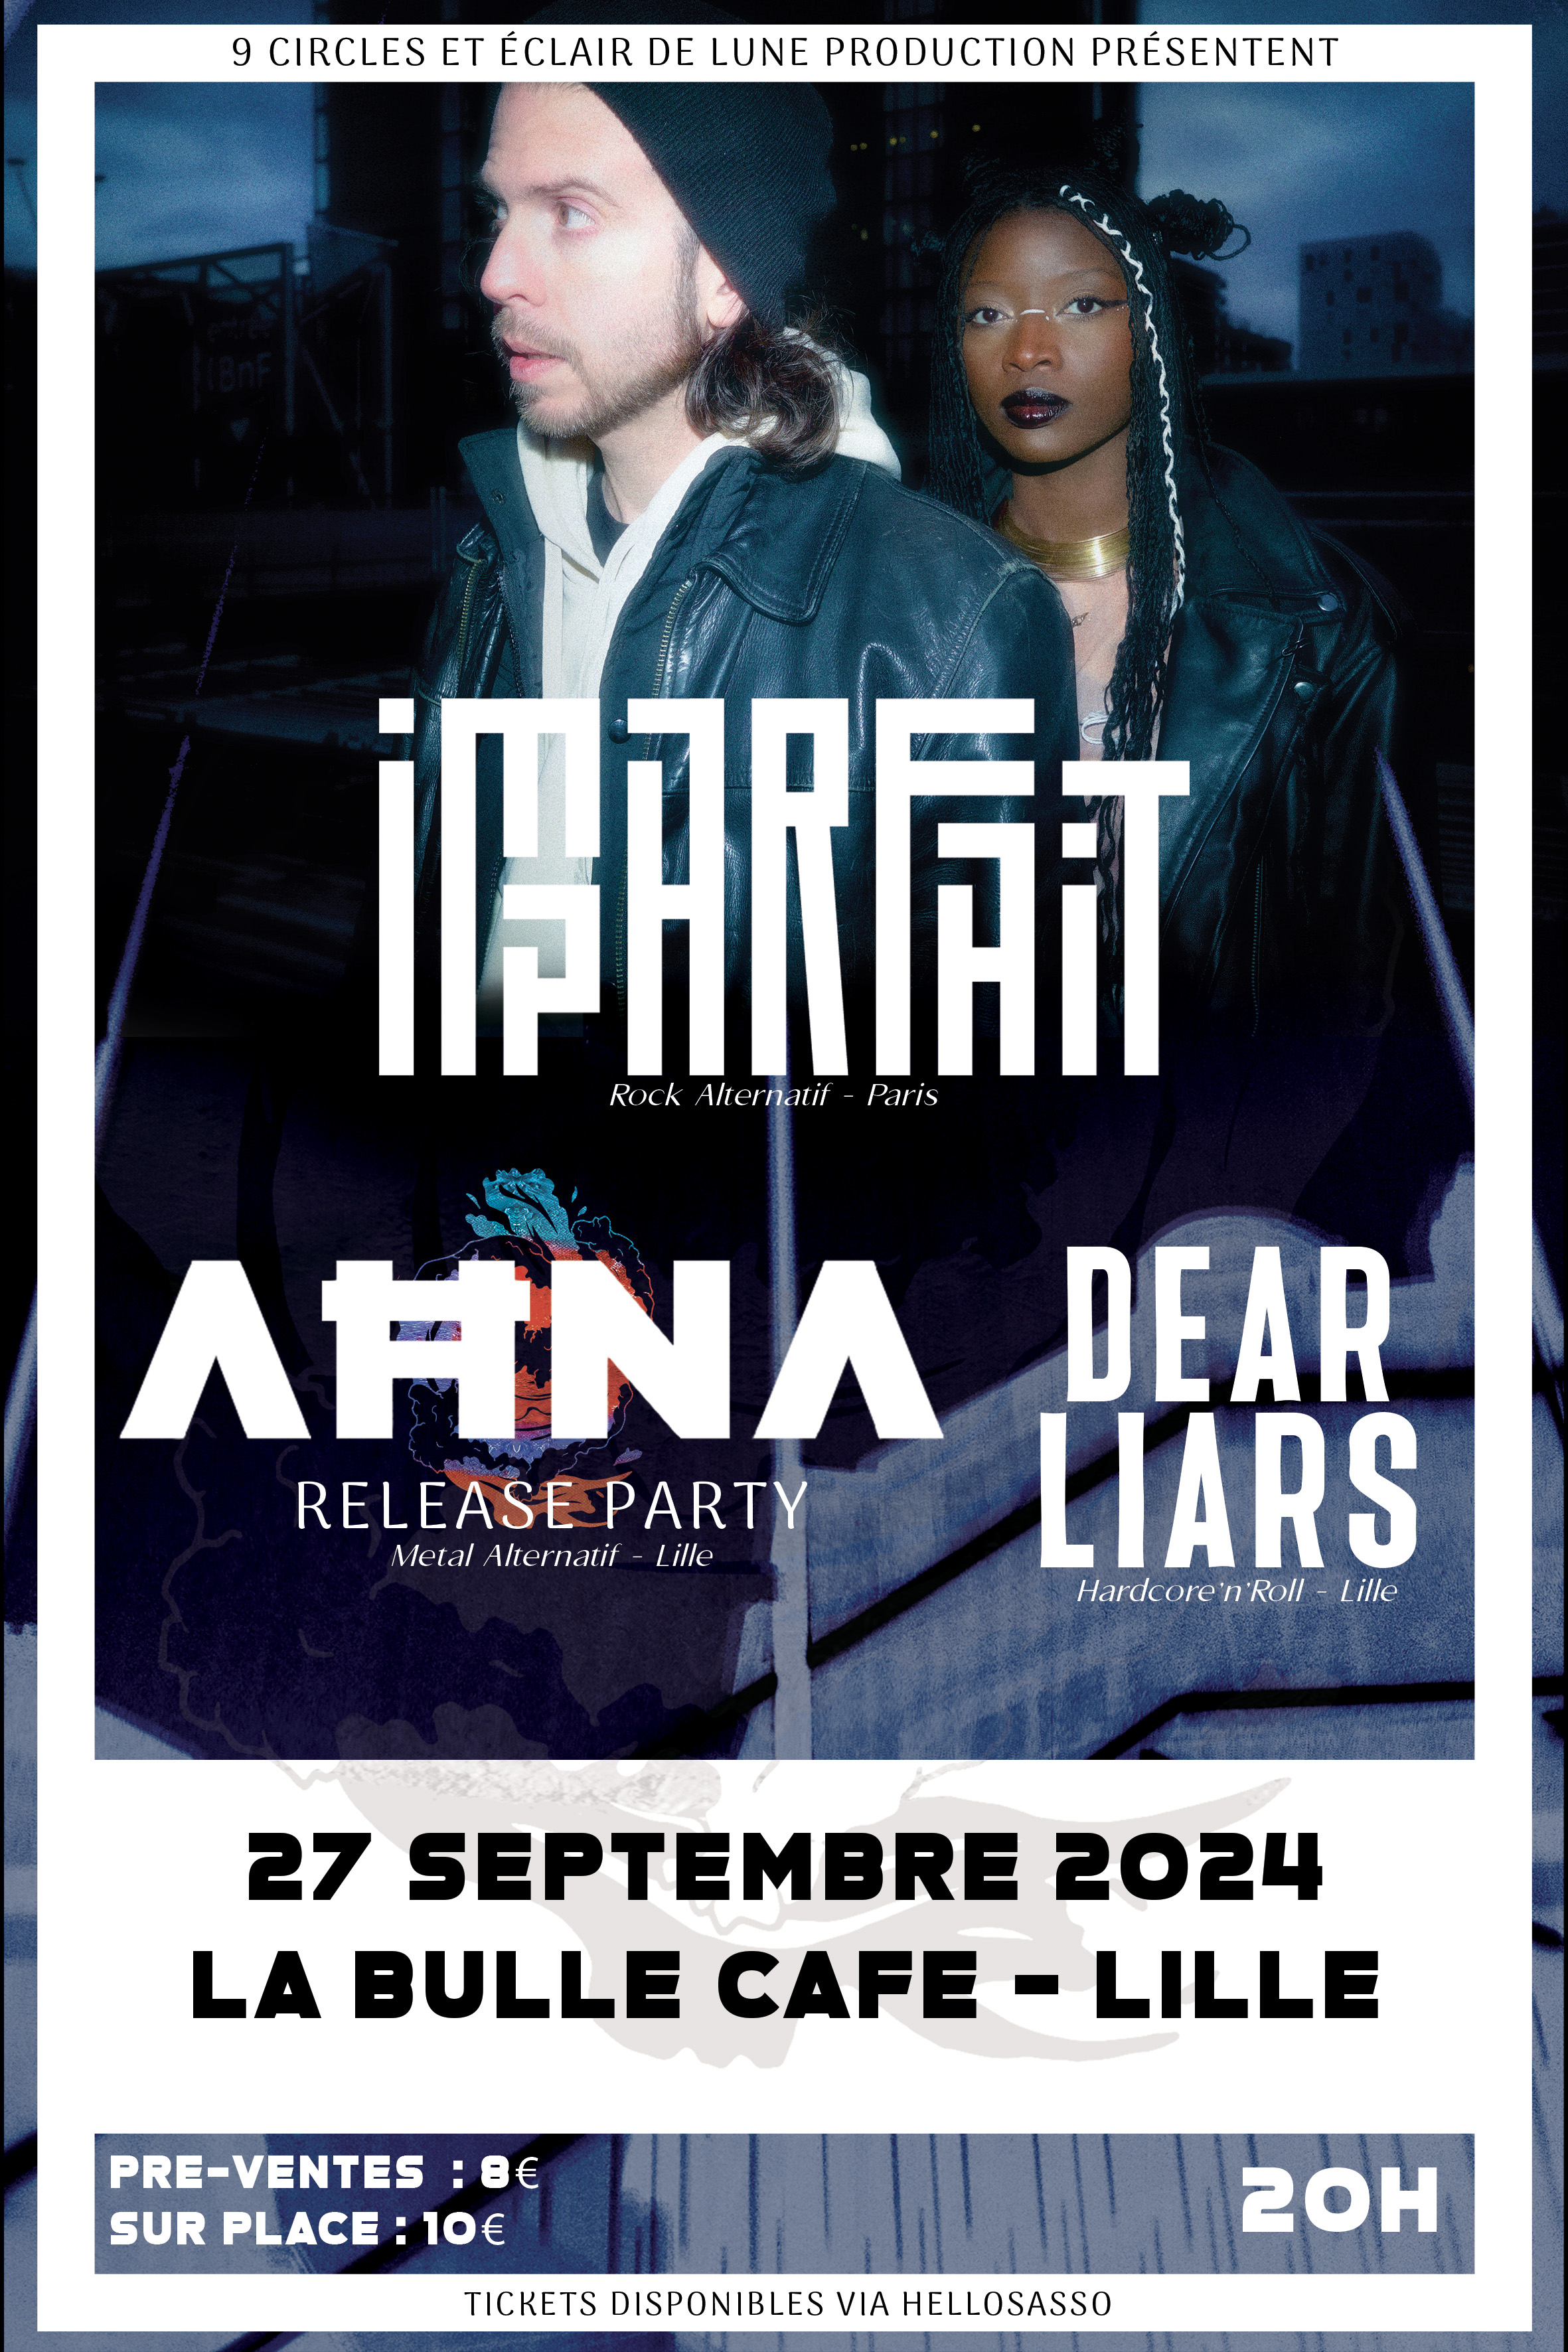 Imparfait + Ahna (release party) + Dear Liars